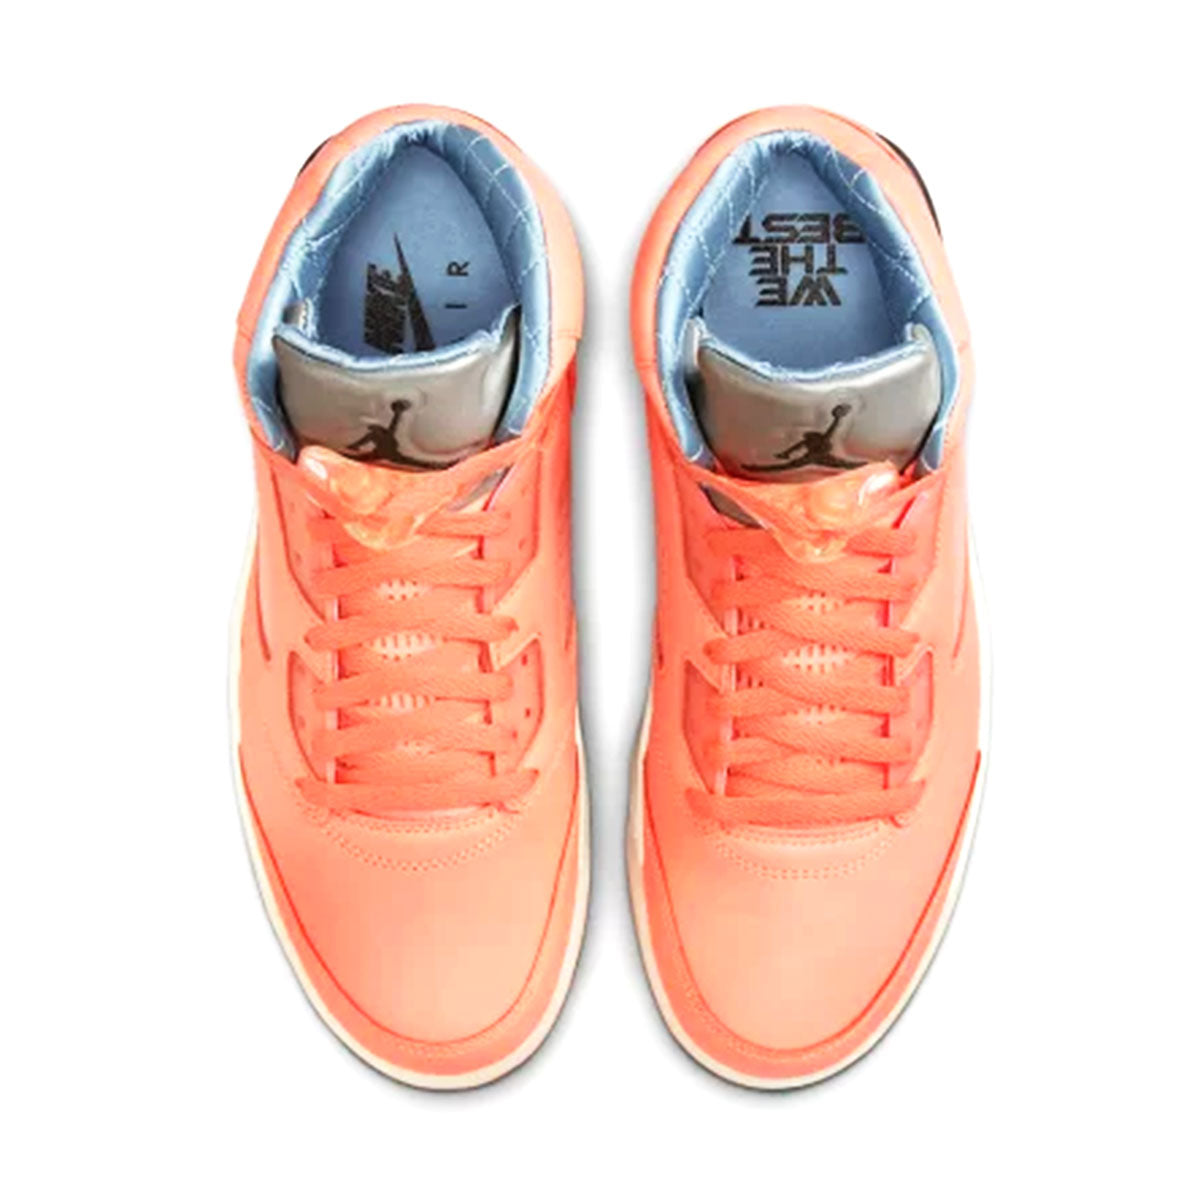 DJ Khaled × Nike Air Jordan 5 Retro Crimson Bliss DJキャレド × ナイキ エア ジョーダン 5  レトロ 